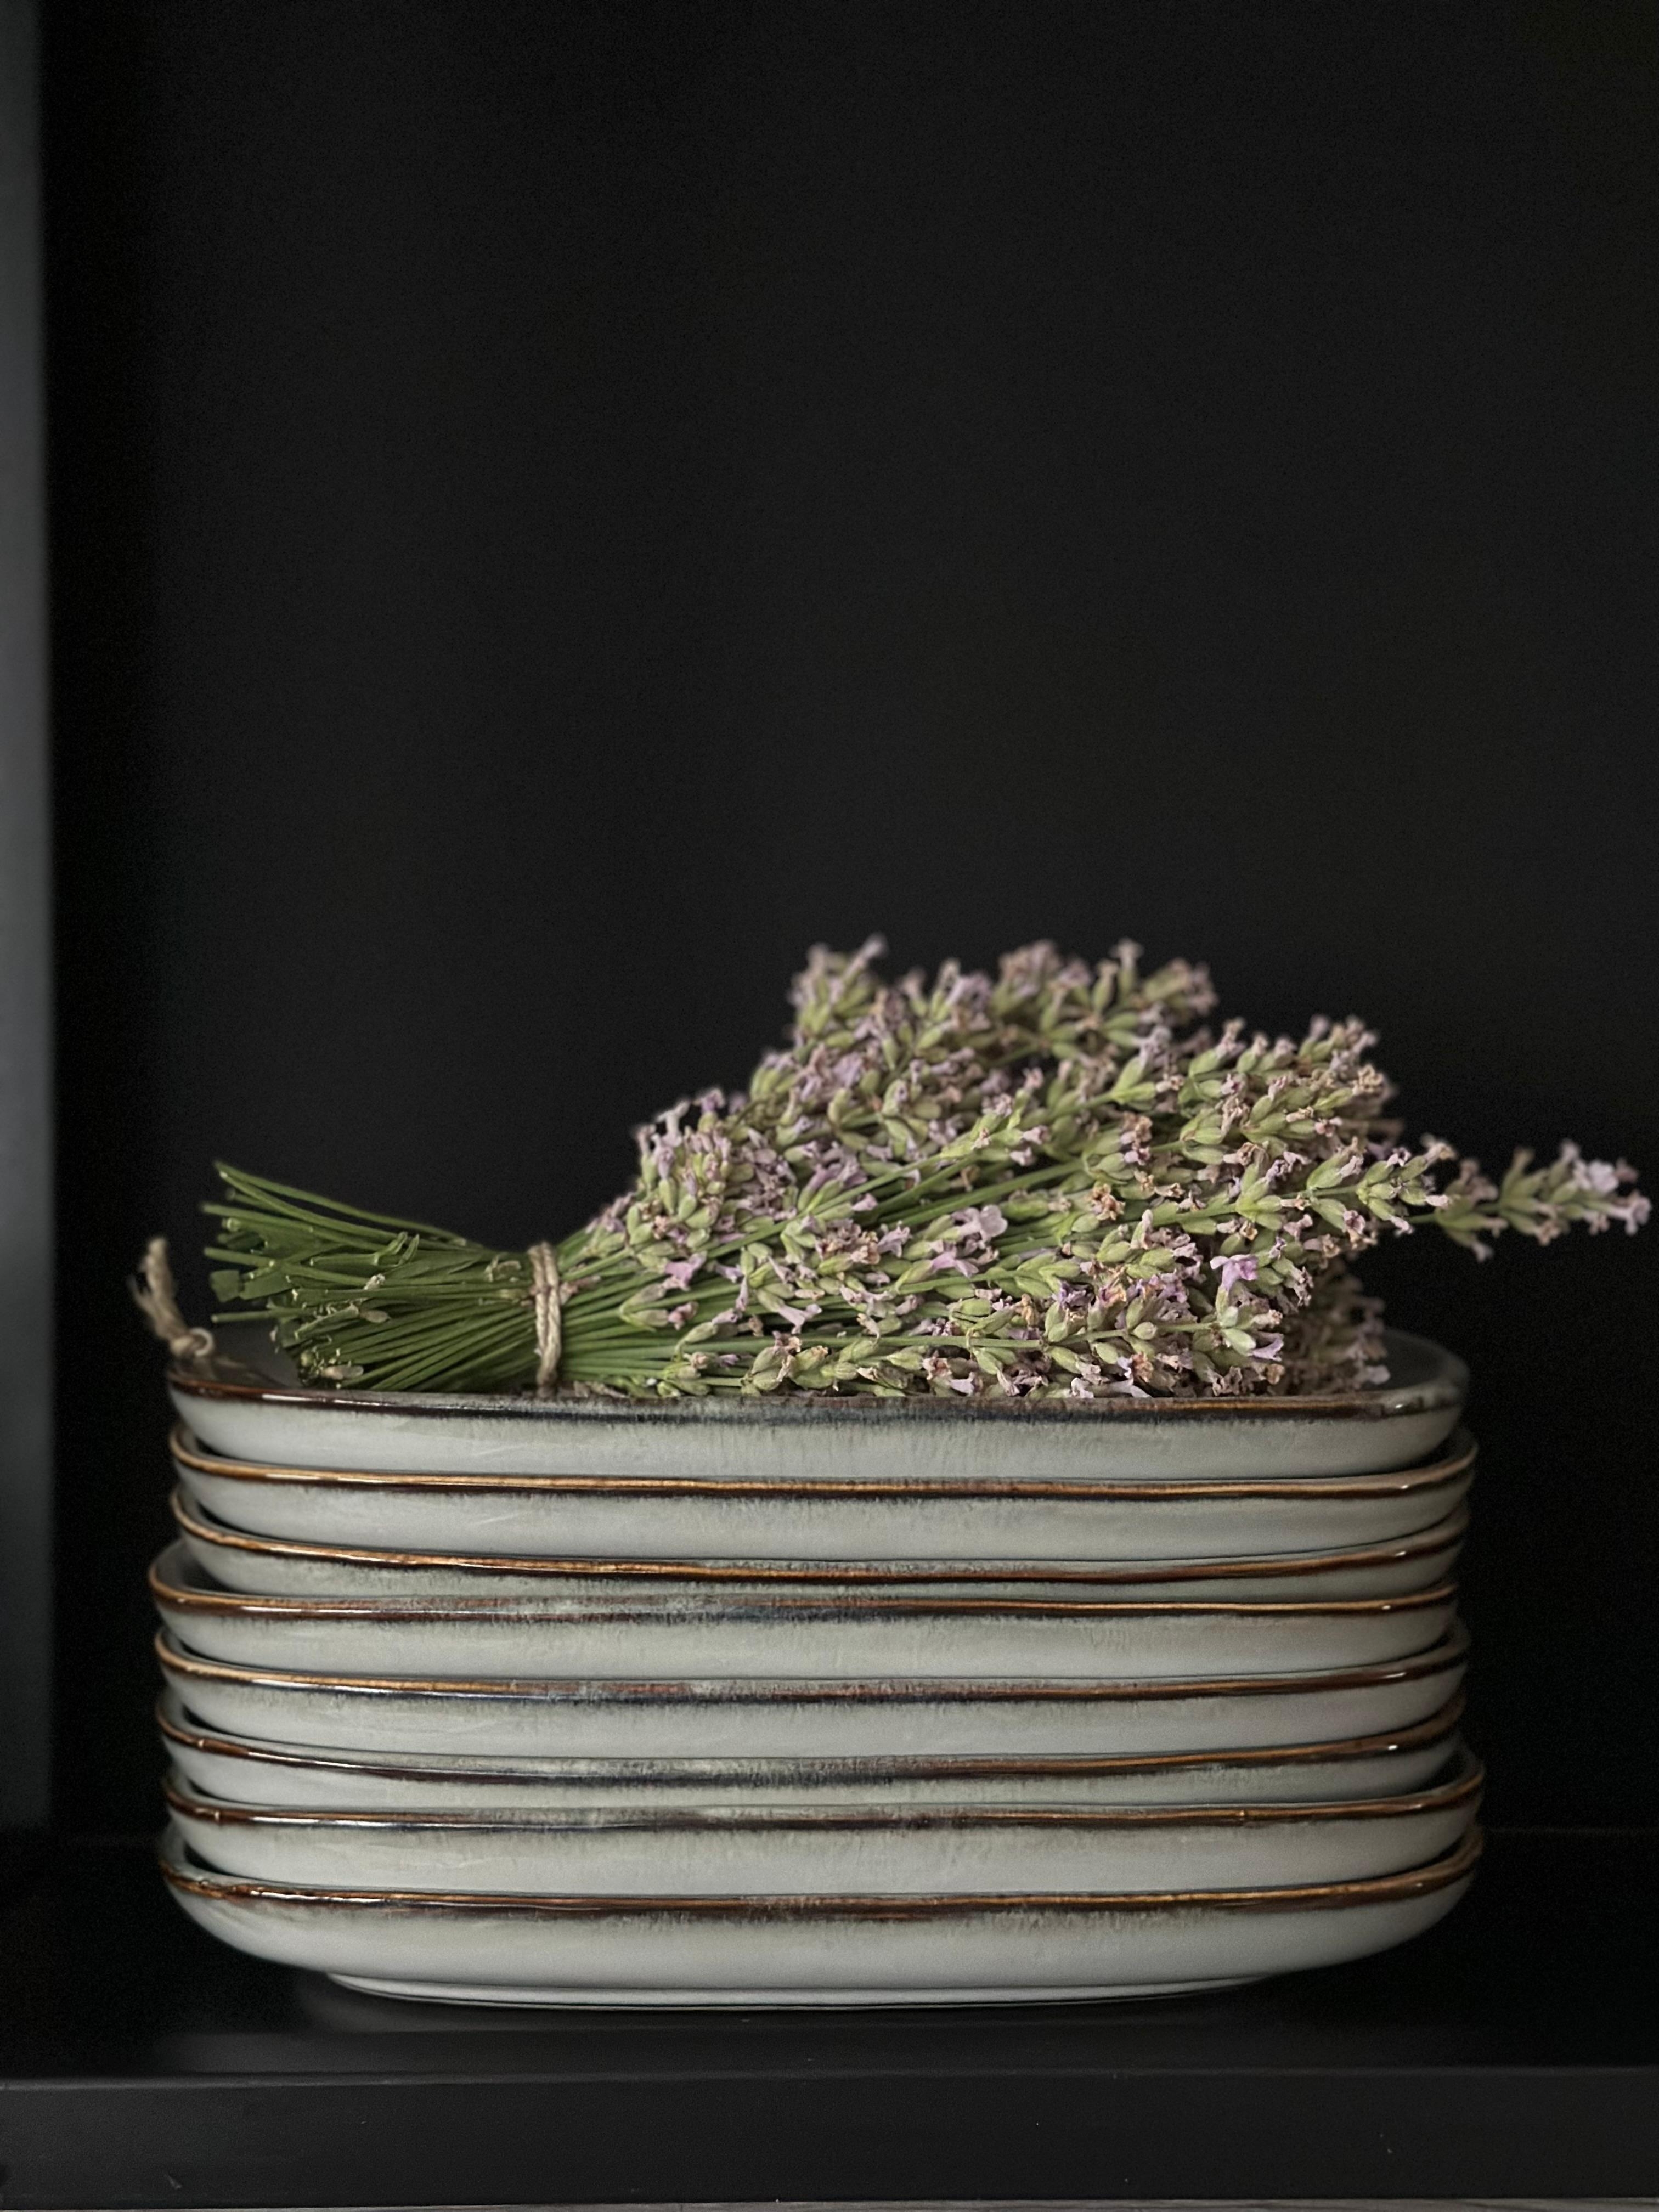 Lavendelernte #lavendel #keramik #küche #küchendeko #steinzeug #schwarz